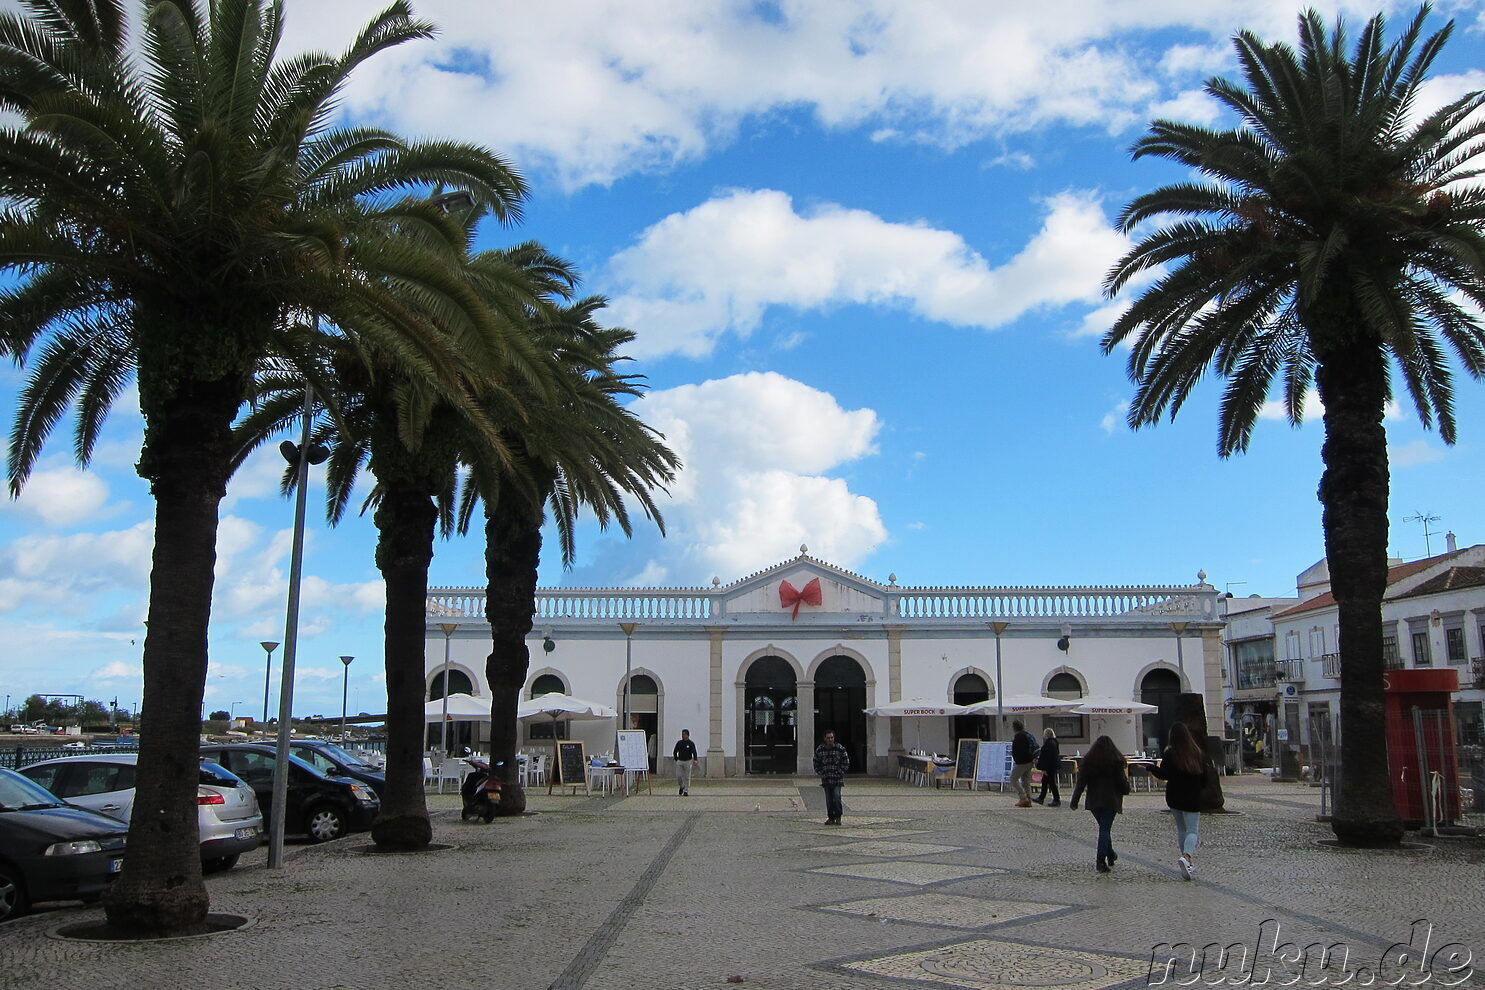 Mercado da Ribeira - Tavira, Portugal, Südeuropa - Portugal 2015/16